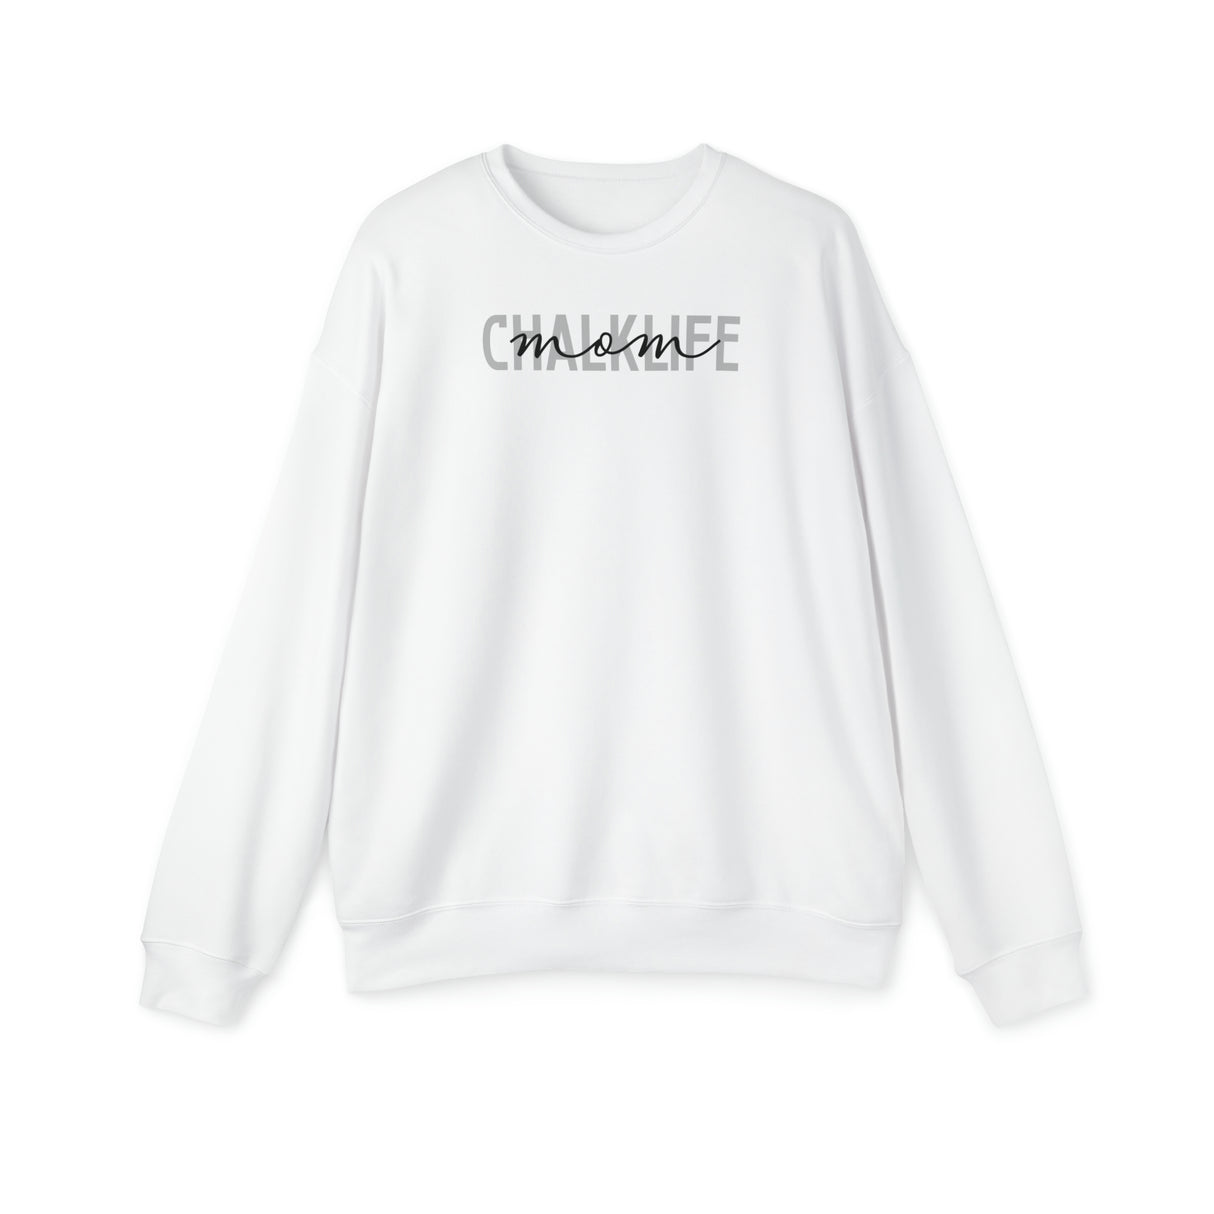 Chalklife "Mom or Grandma" Sweatshirt